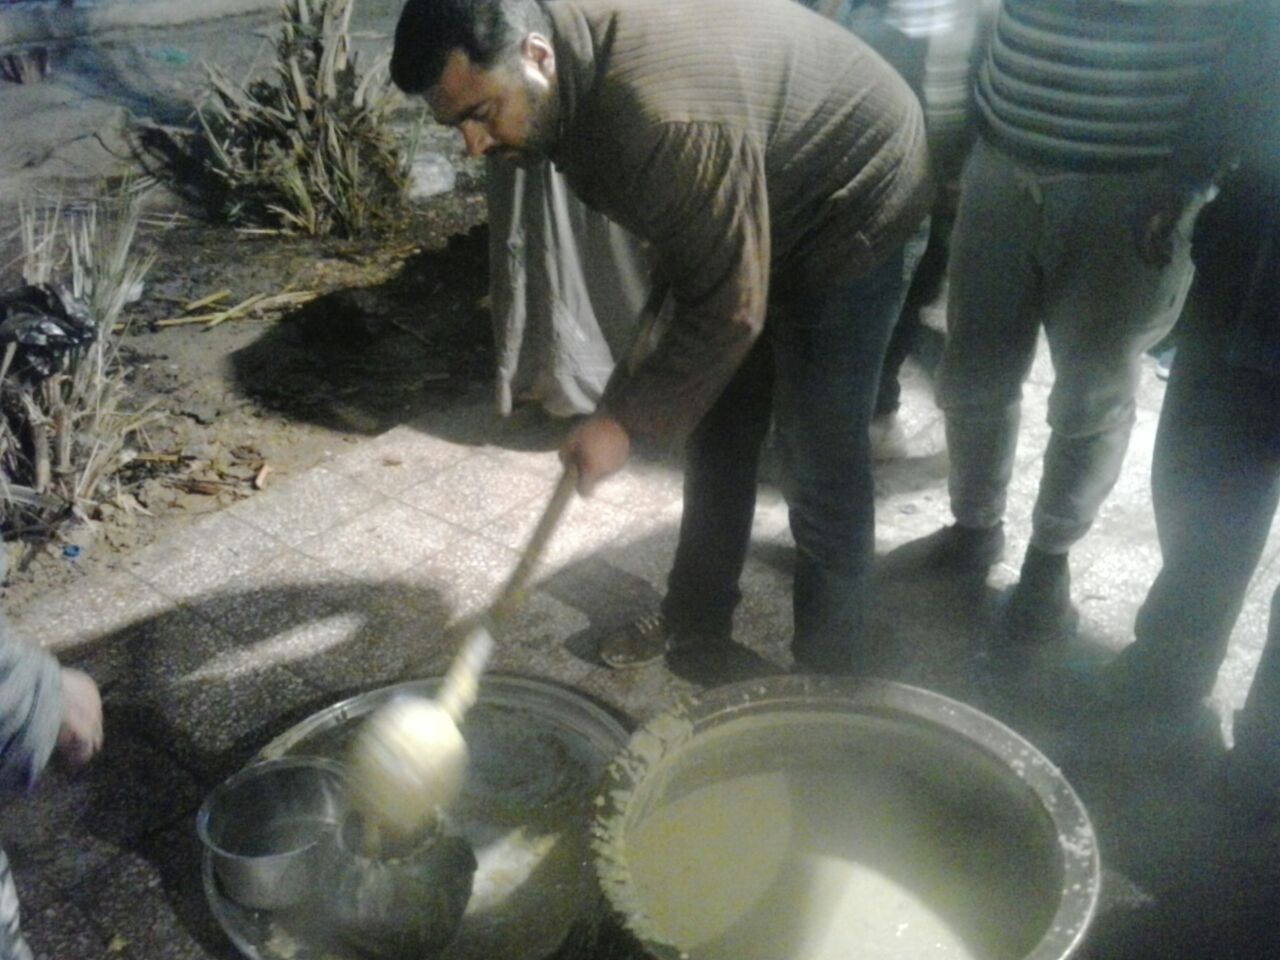 مراسم سنتی پخت حلیم در پیر اولیا الله اوز برگزار شد